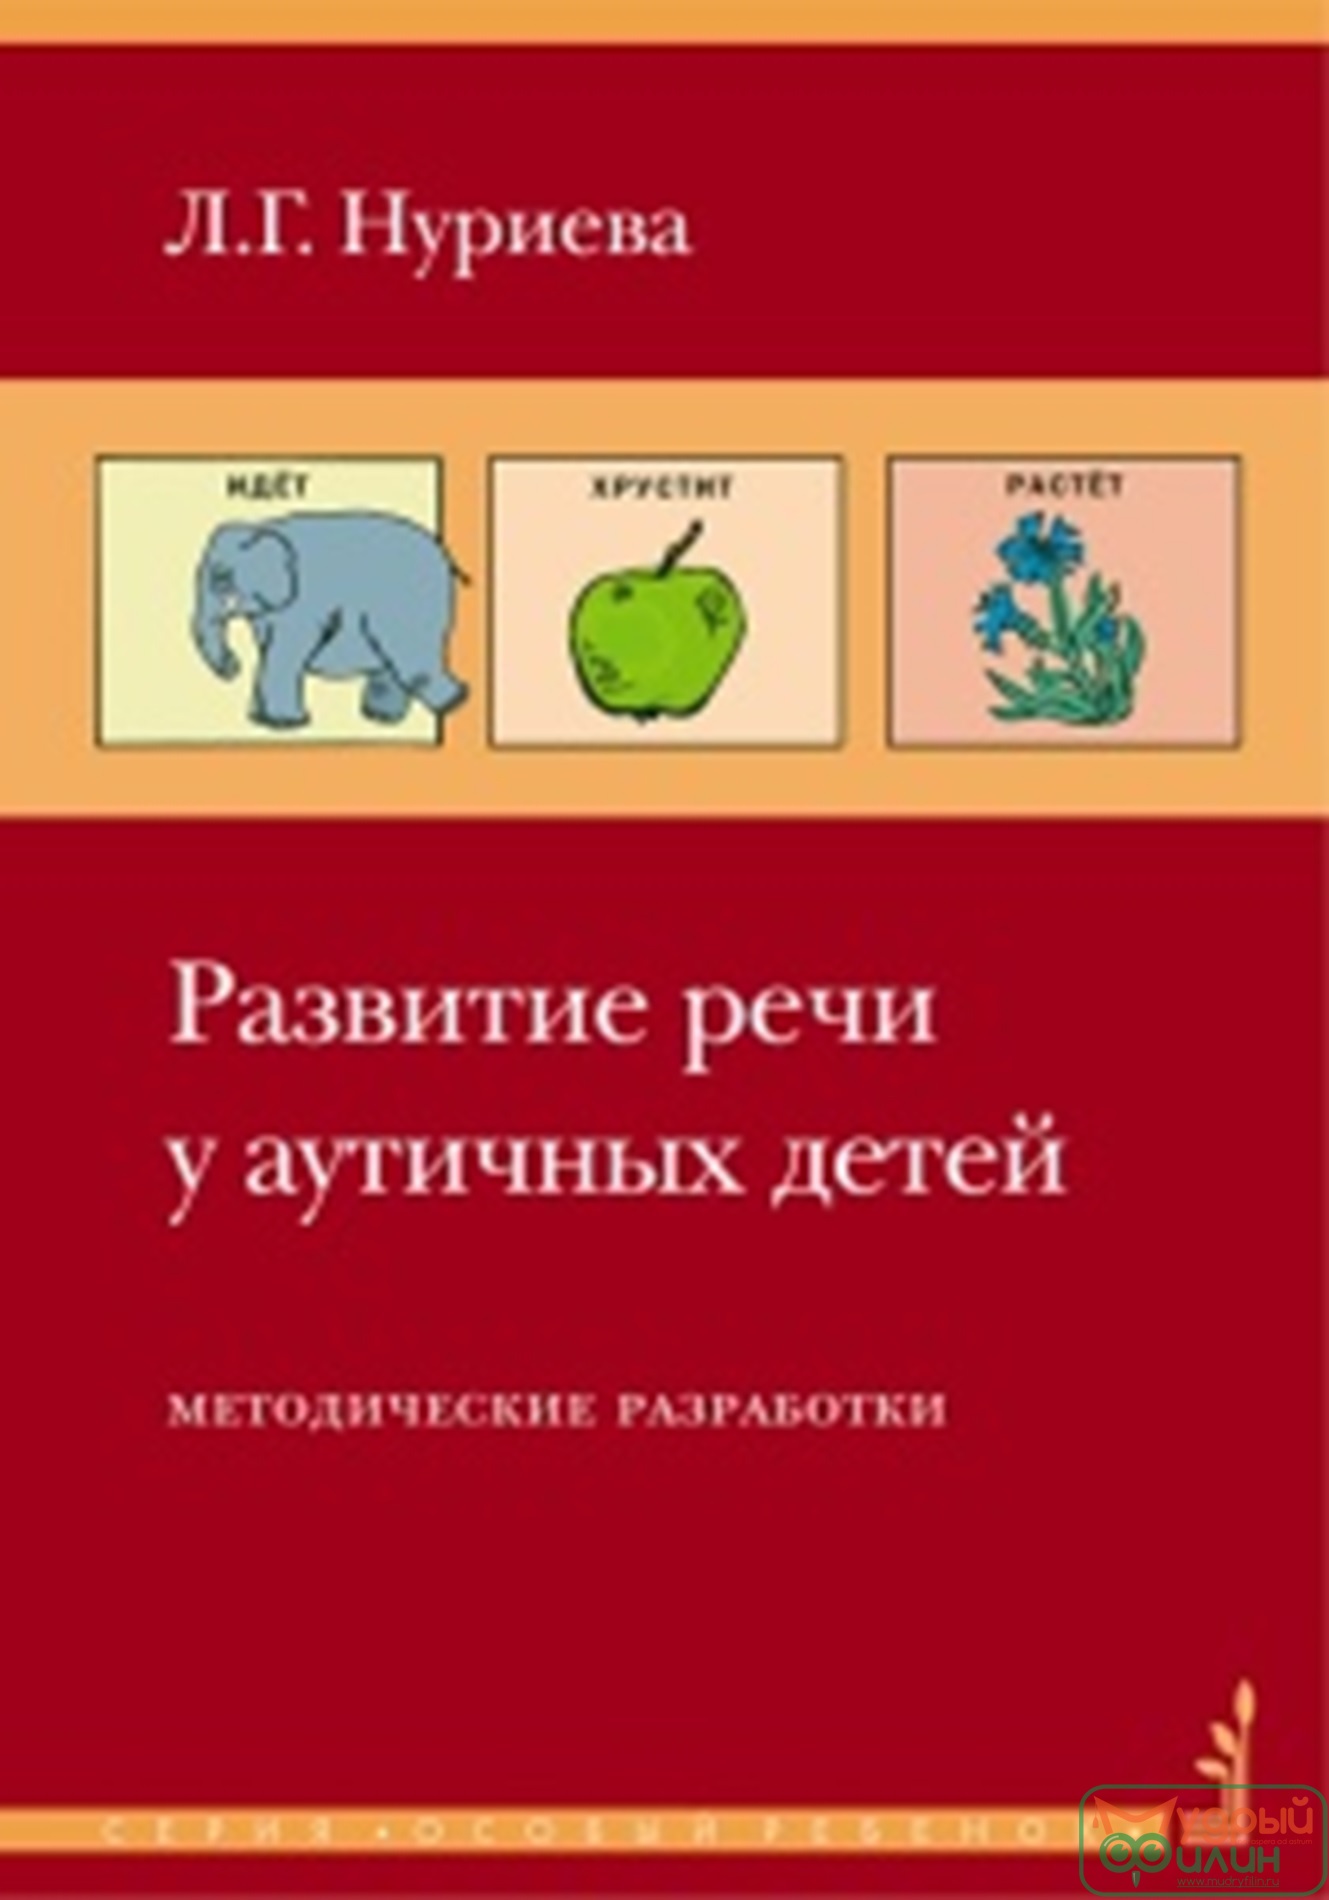 Пособие - Развитие речи у аутичных детей (комплект: книга+папка), авт. Нуриева Л.Г.  - 1